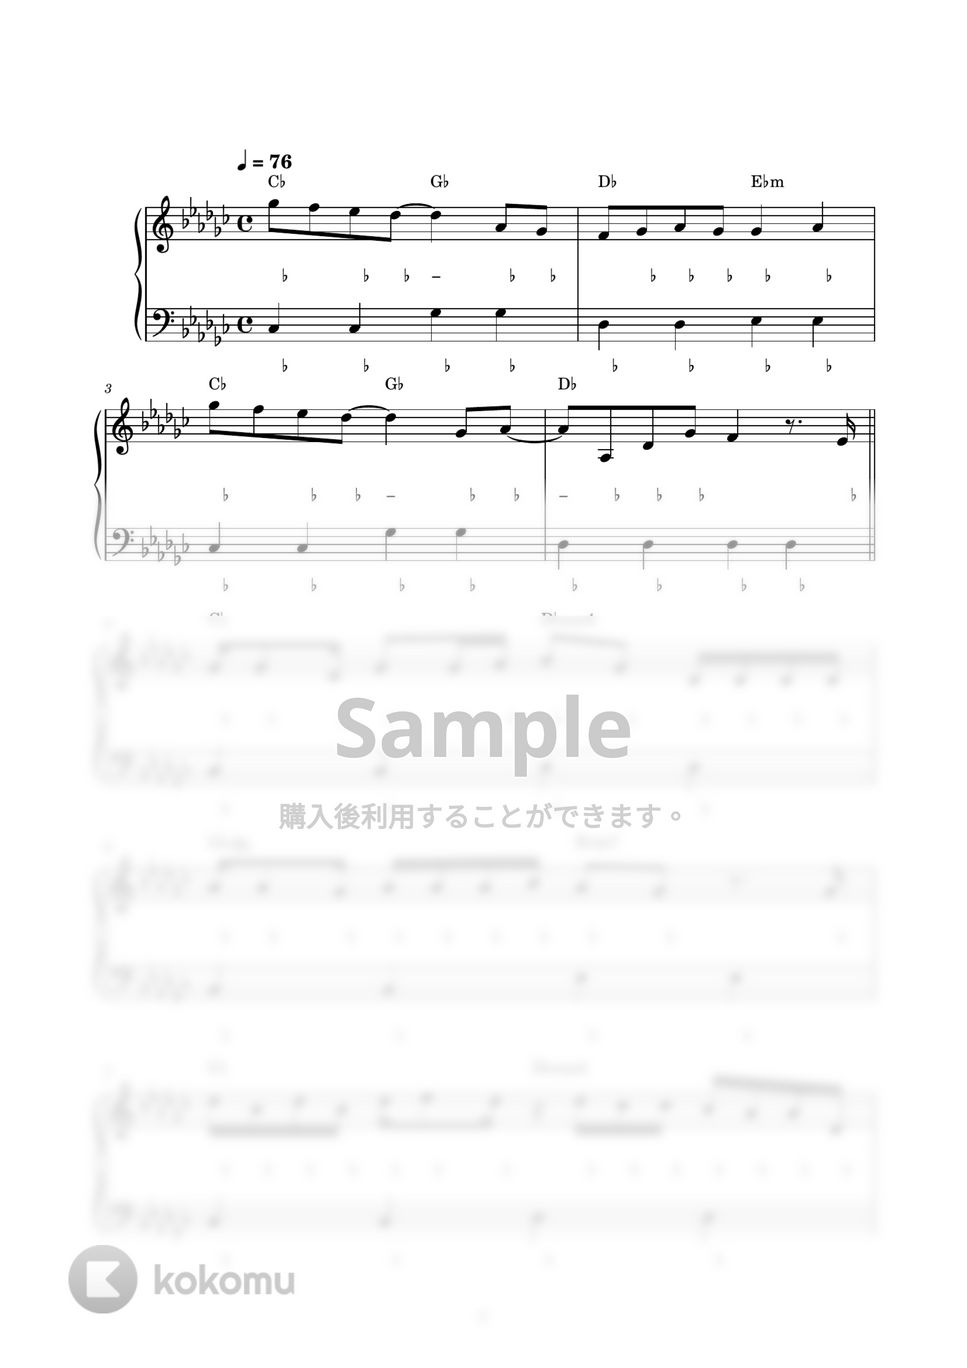 優里 - おにごっこ (ピアノ楽譜 / かんたん両手 / 歌詞付き / ドレミ付き / 初心者向き) by piano.tokyo